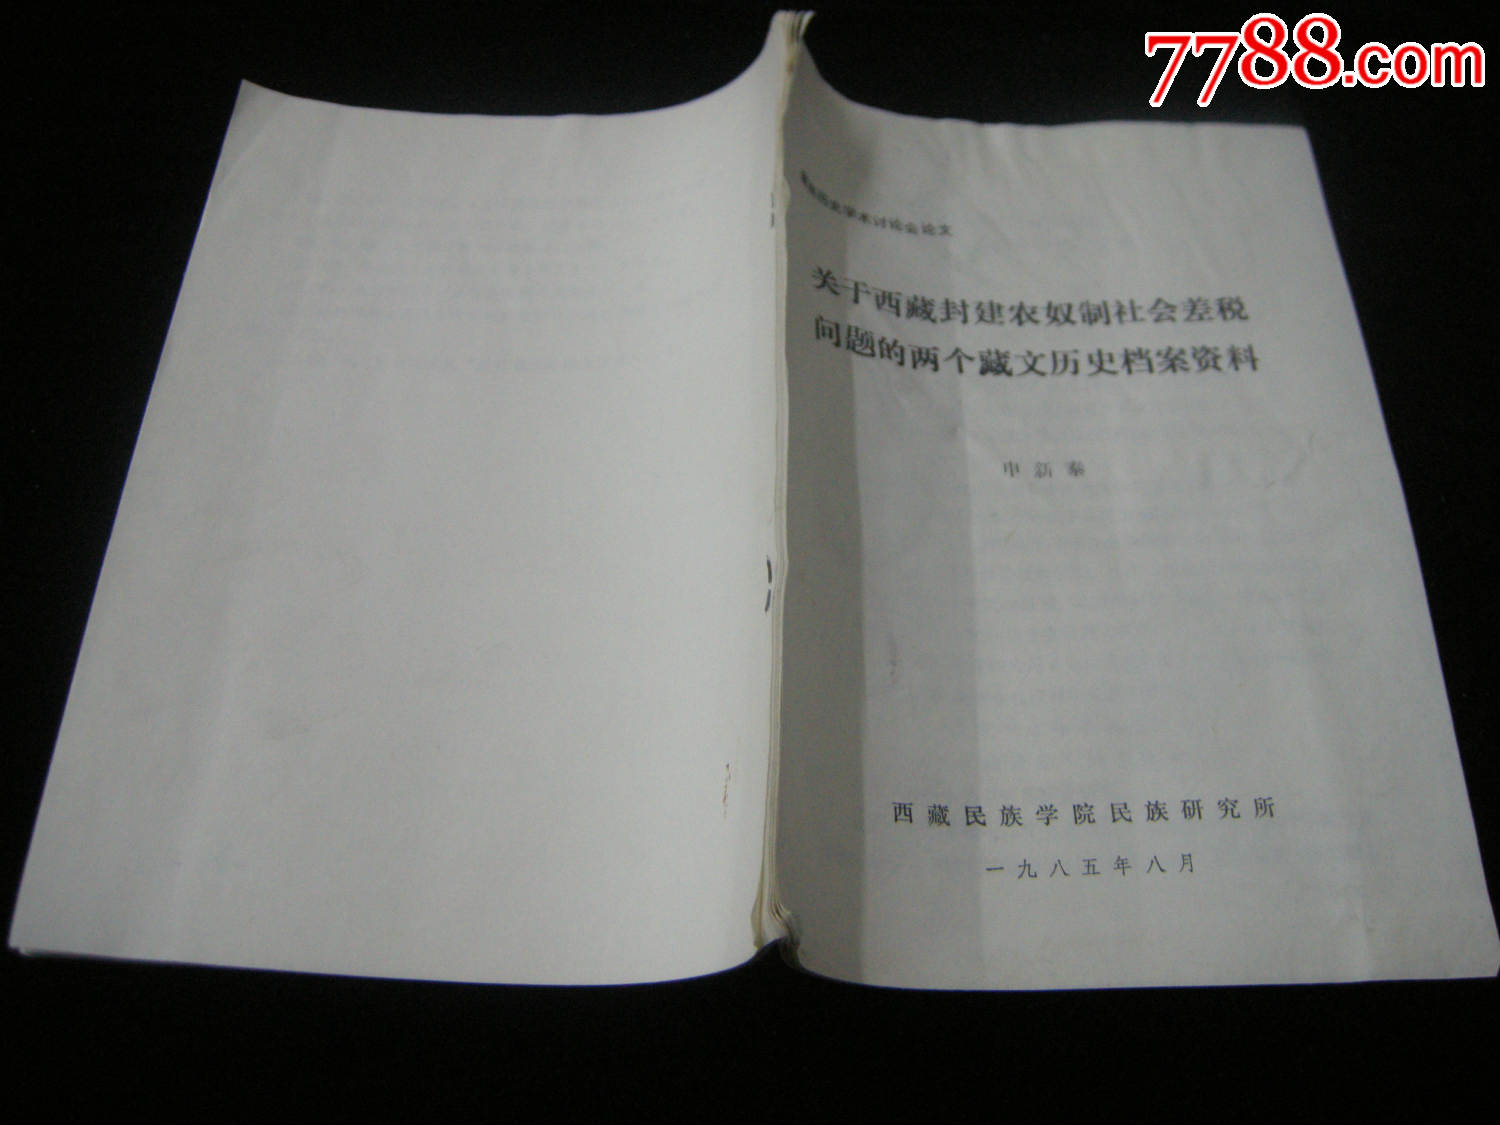 早期油印本;85年--学术论文-关于西藏封建农奴